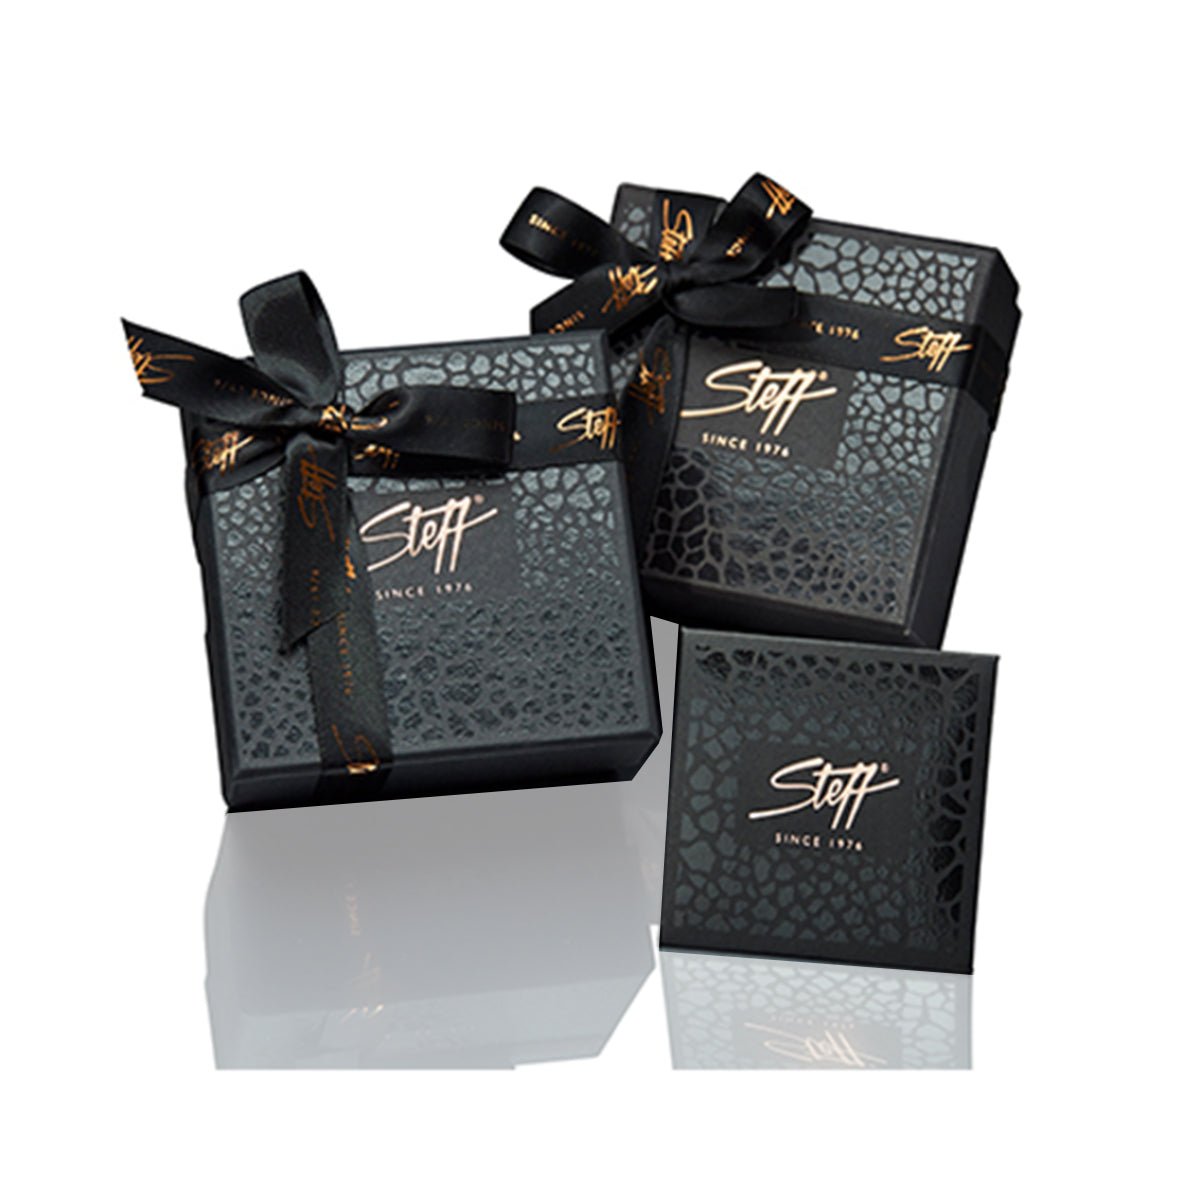 Steff Silver & Enamel Guardian Angel Wing Pendants - Steffans Jewellers